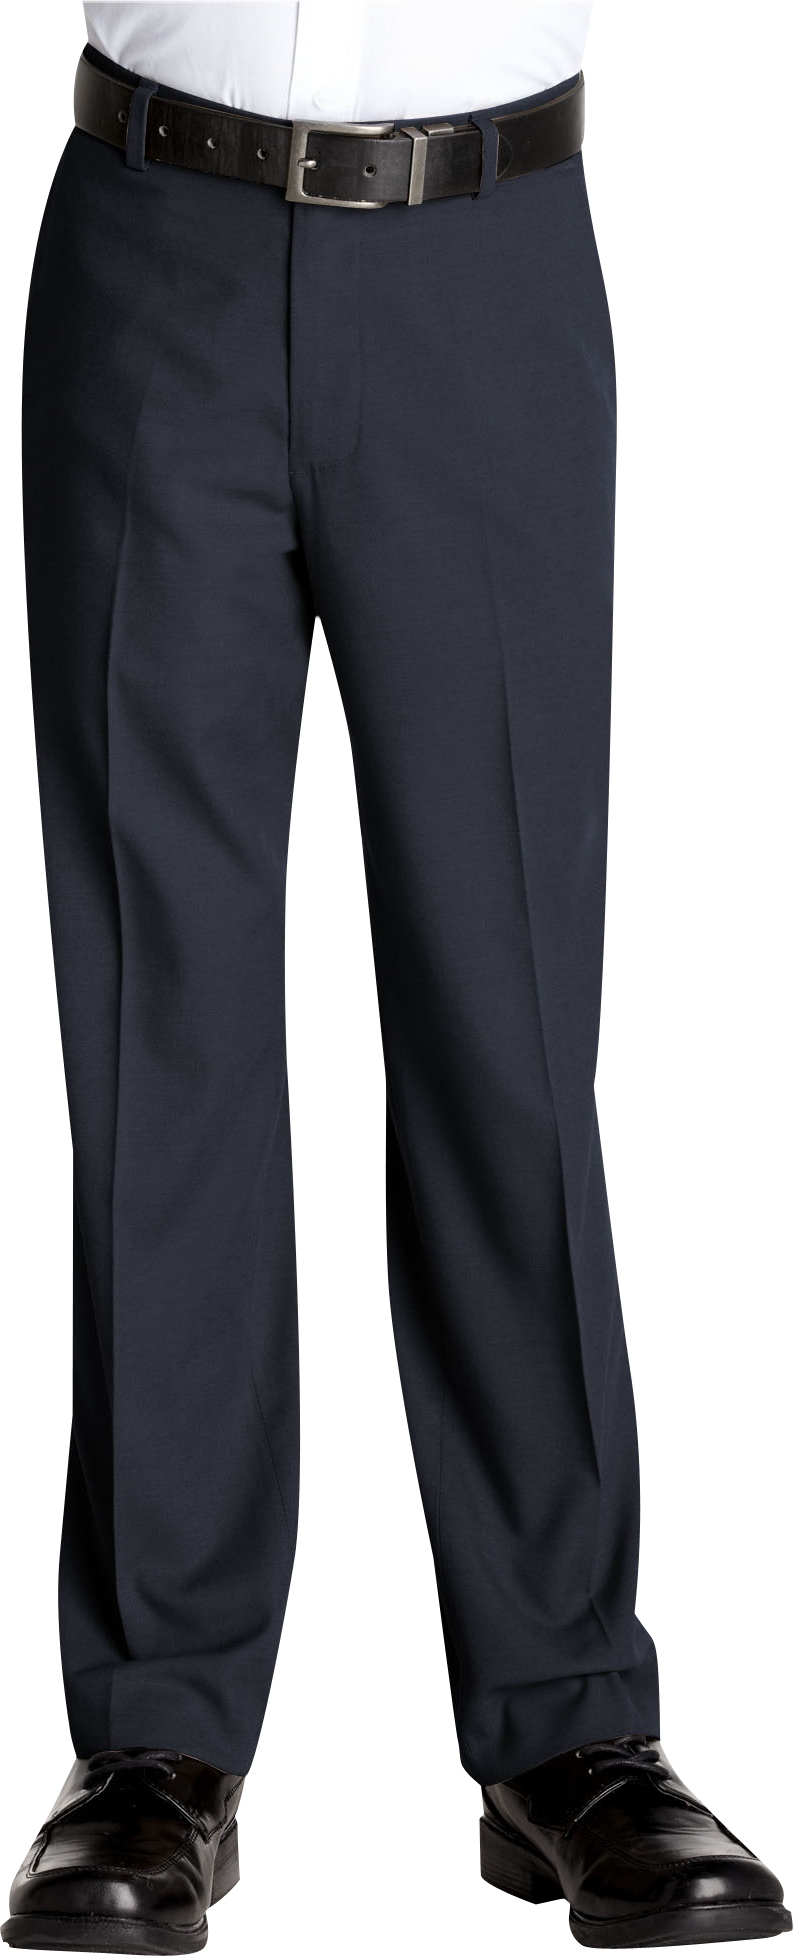 calvin klein suit pants